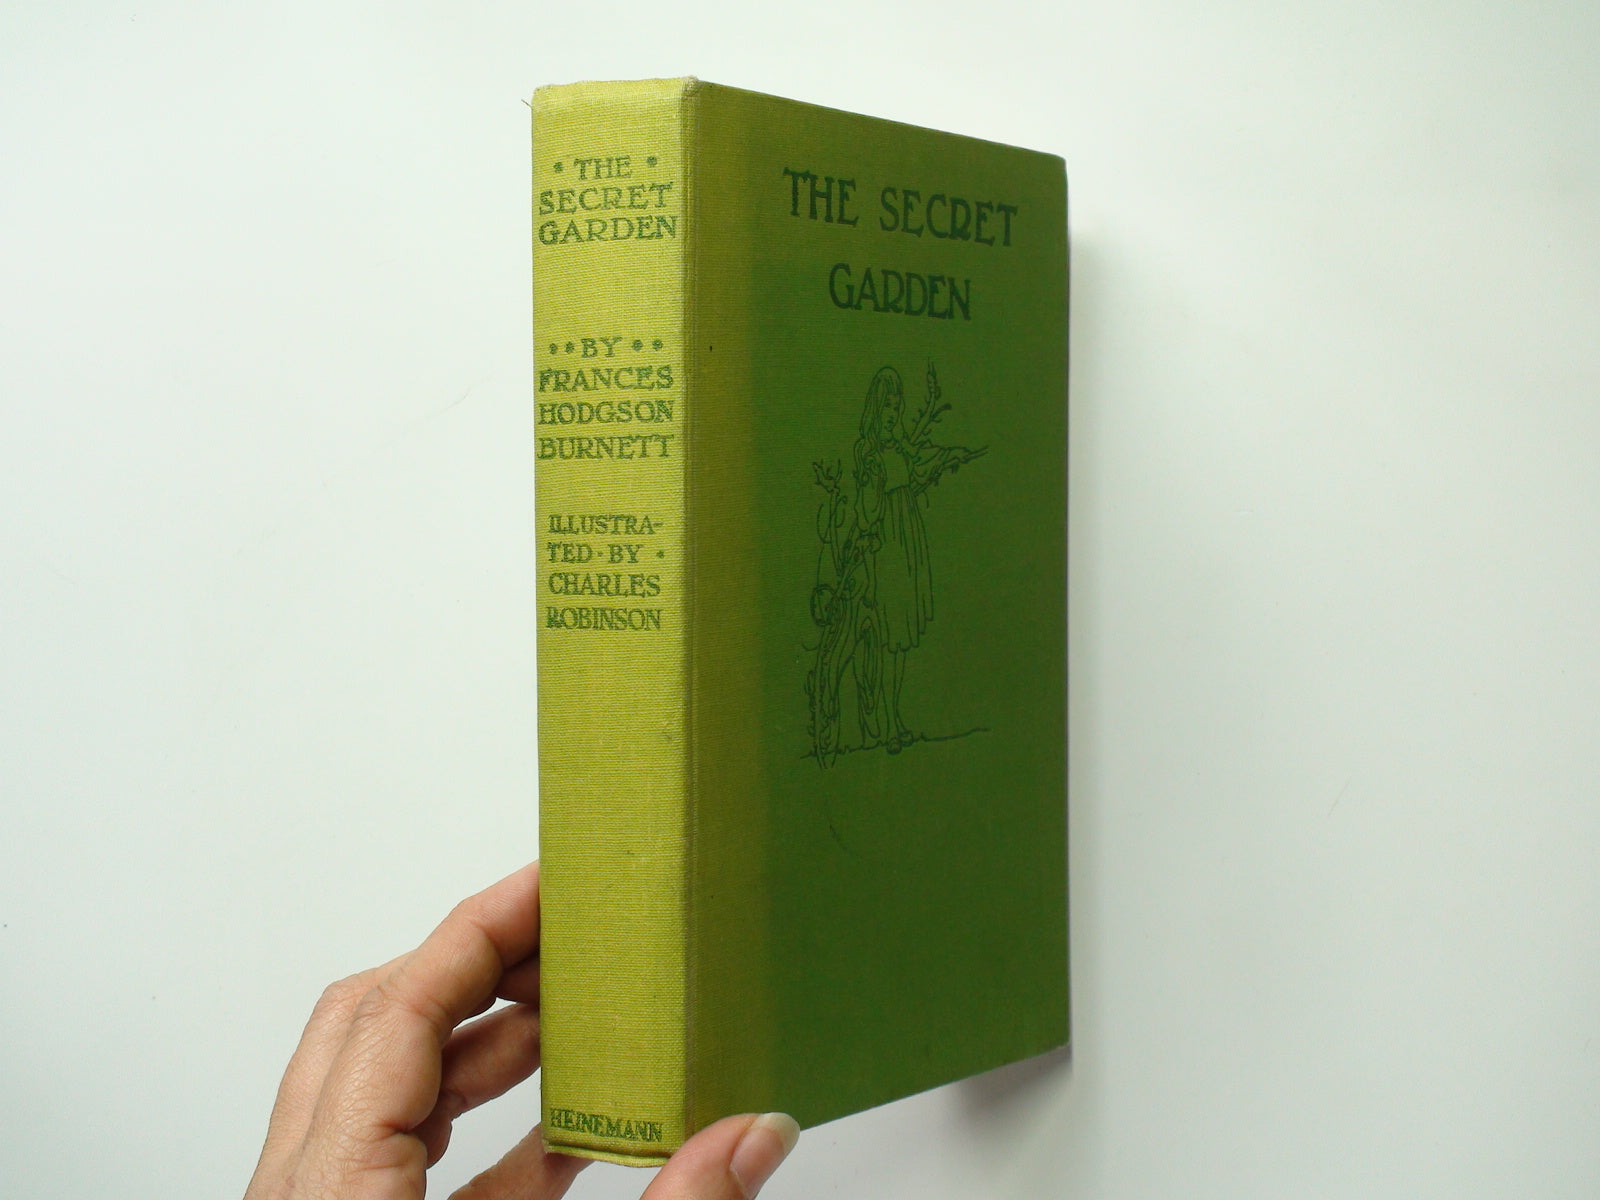 The Secret Garden, by Frances Hodgson Burnett, Illustrated, No D/J, 1958